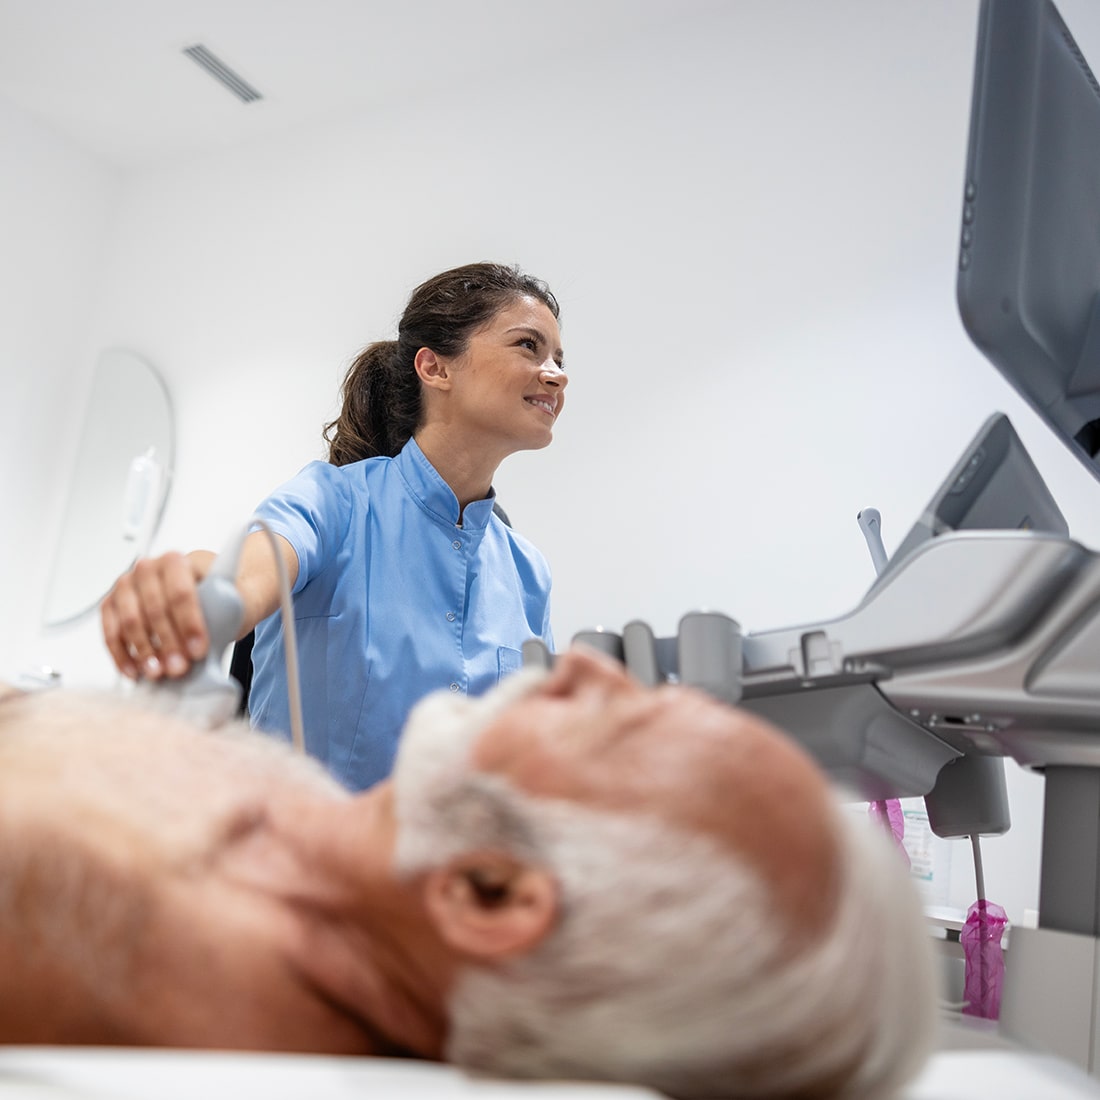 LifeScan - Pregled pacijenta ultrazvukom